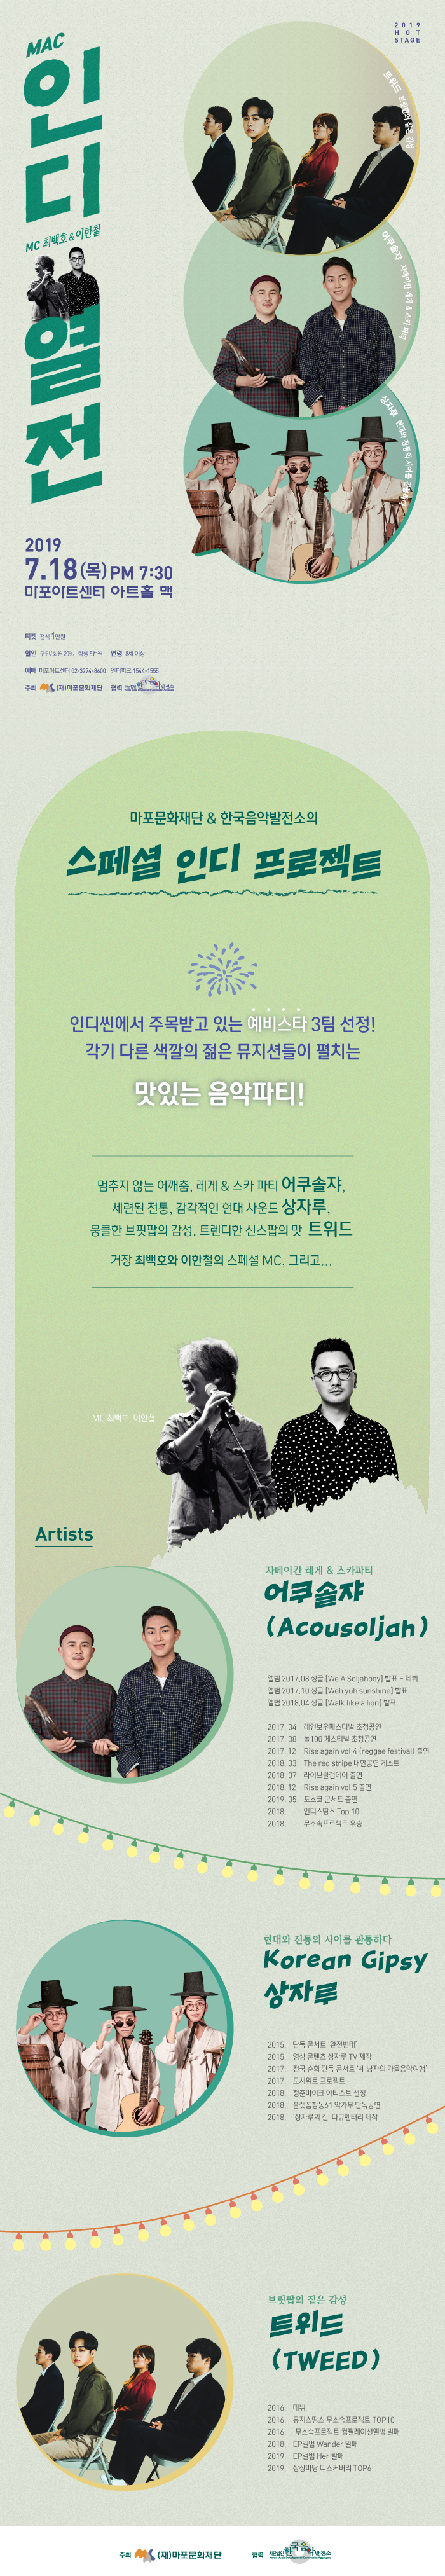 [이벤트] 거장 최백호의 MC로 즐기는 〈인디열전〉 무료 초청(19-0129)